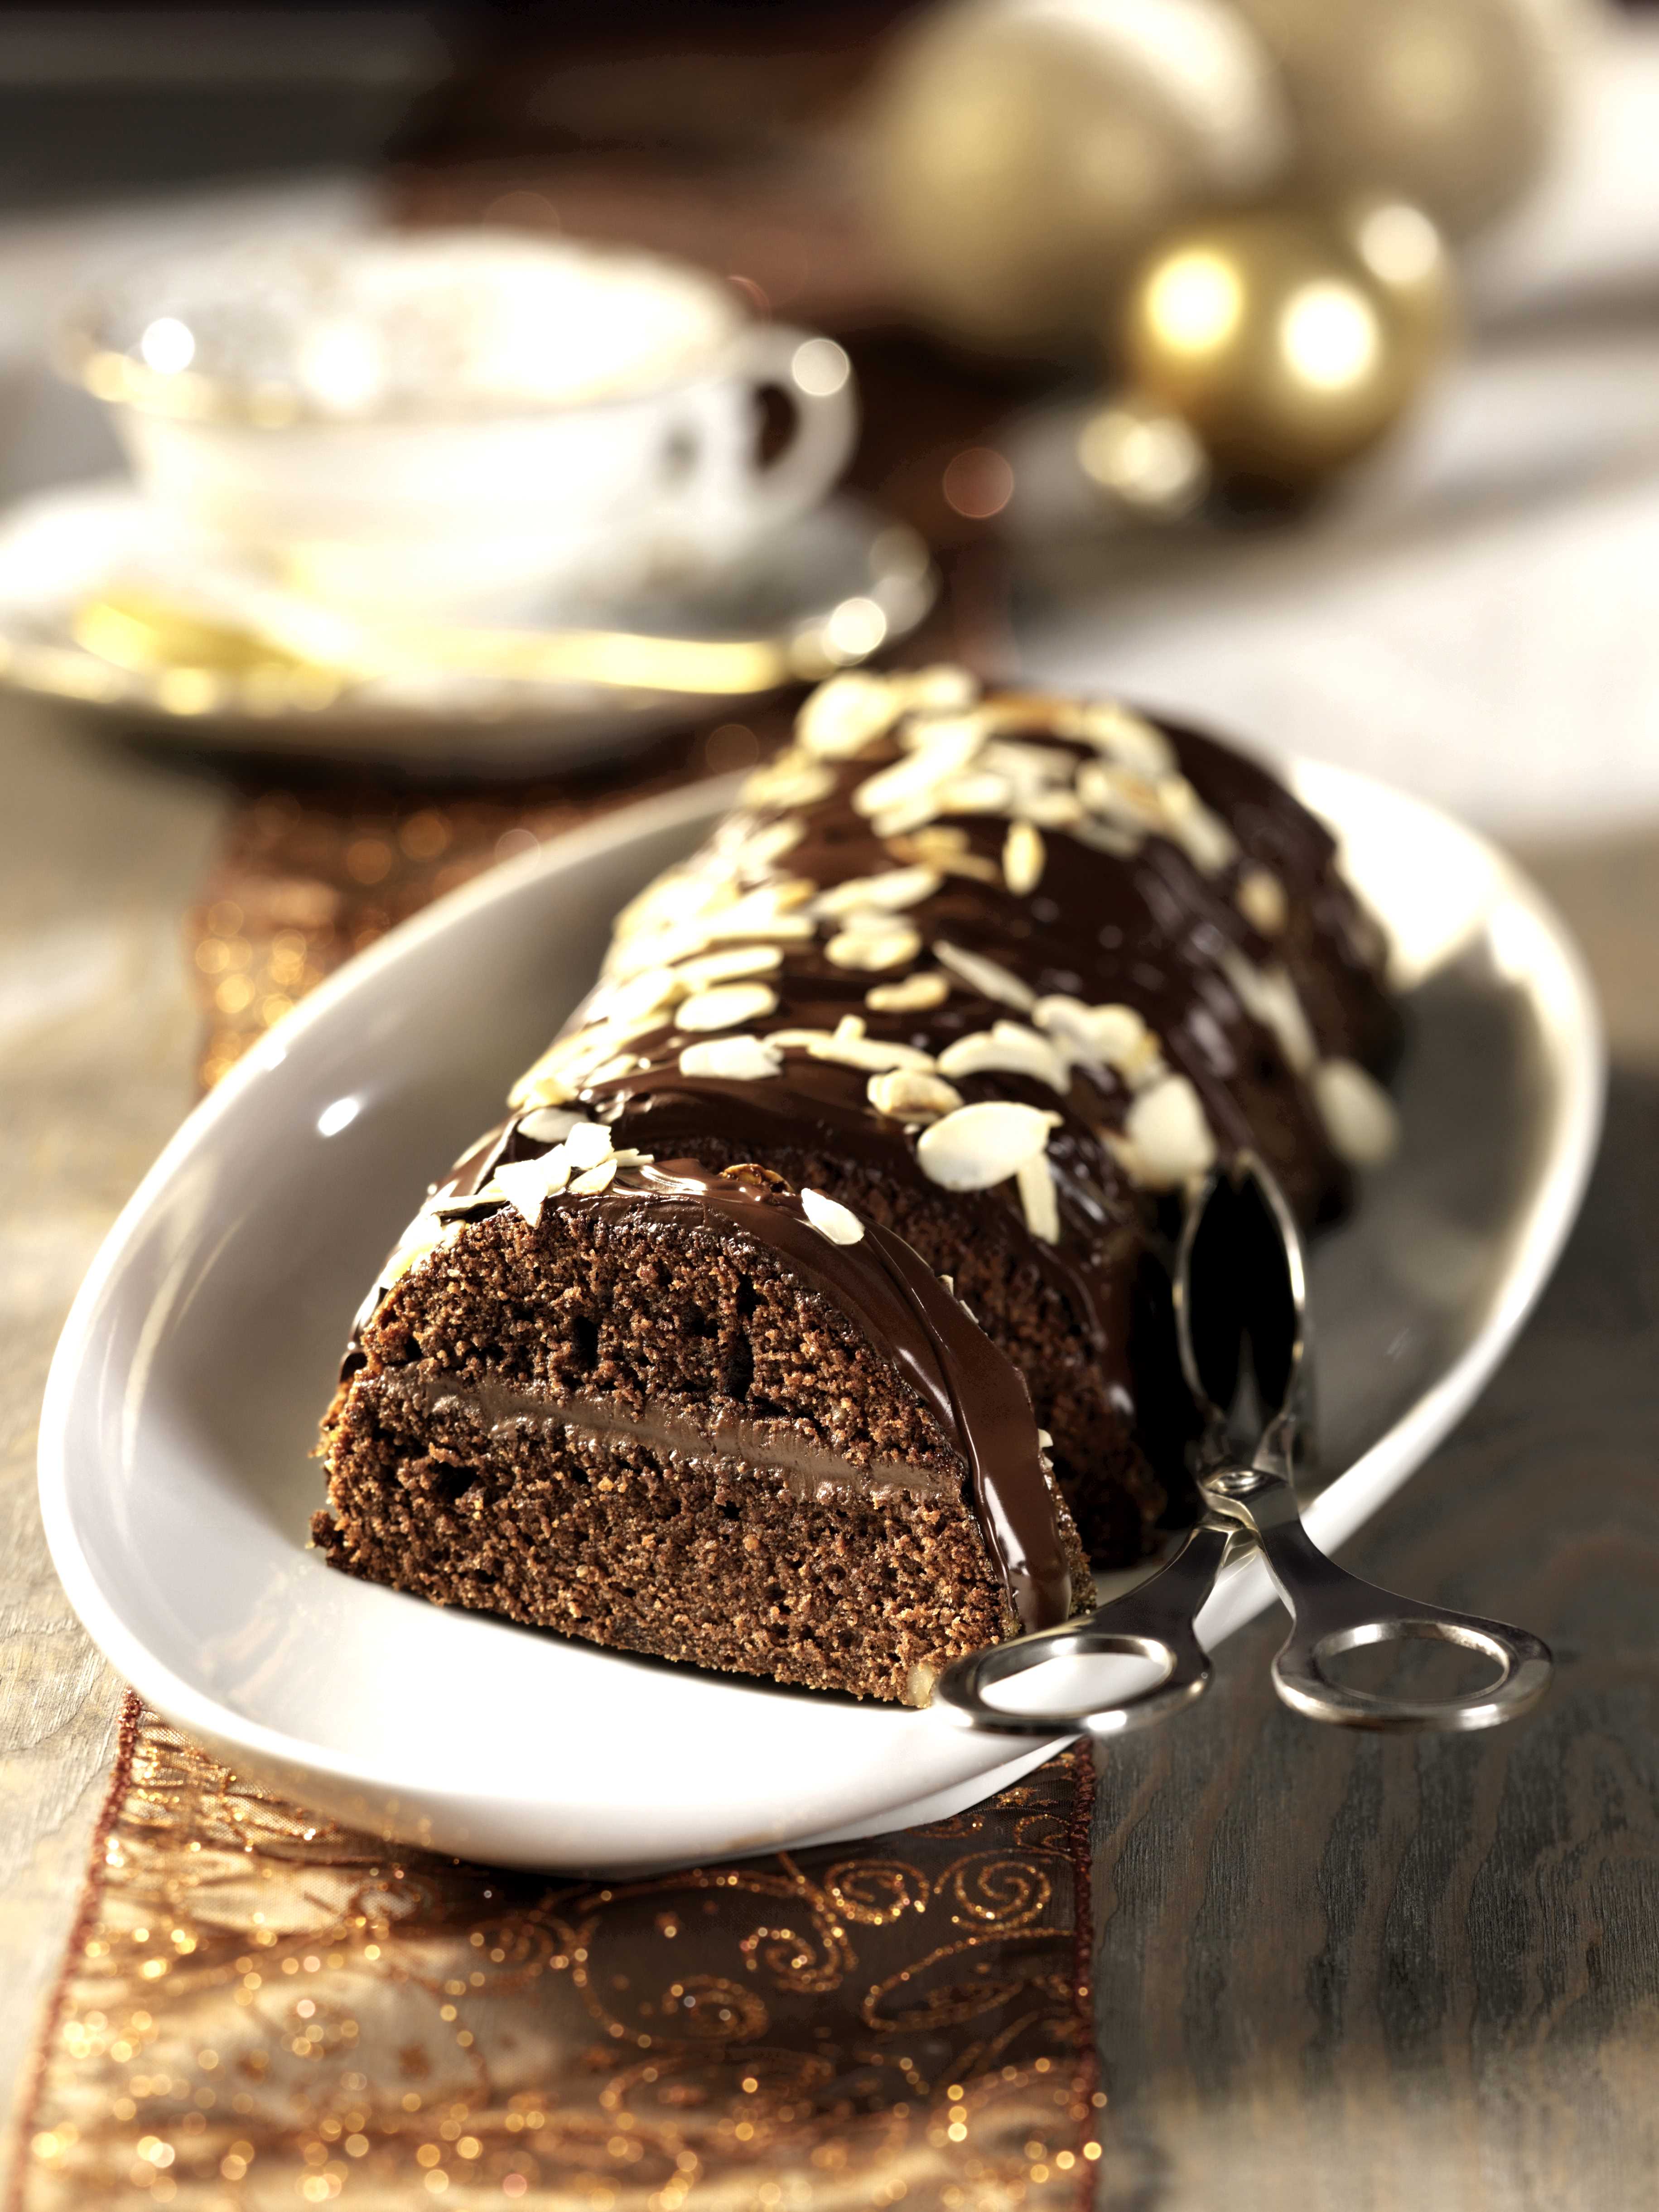 Dolci Di Natale Bimby.Ricetta Torta Di Noci Con Ripieno Al Cioccolato Con Il Bimby Agrodolce